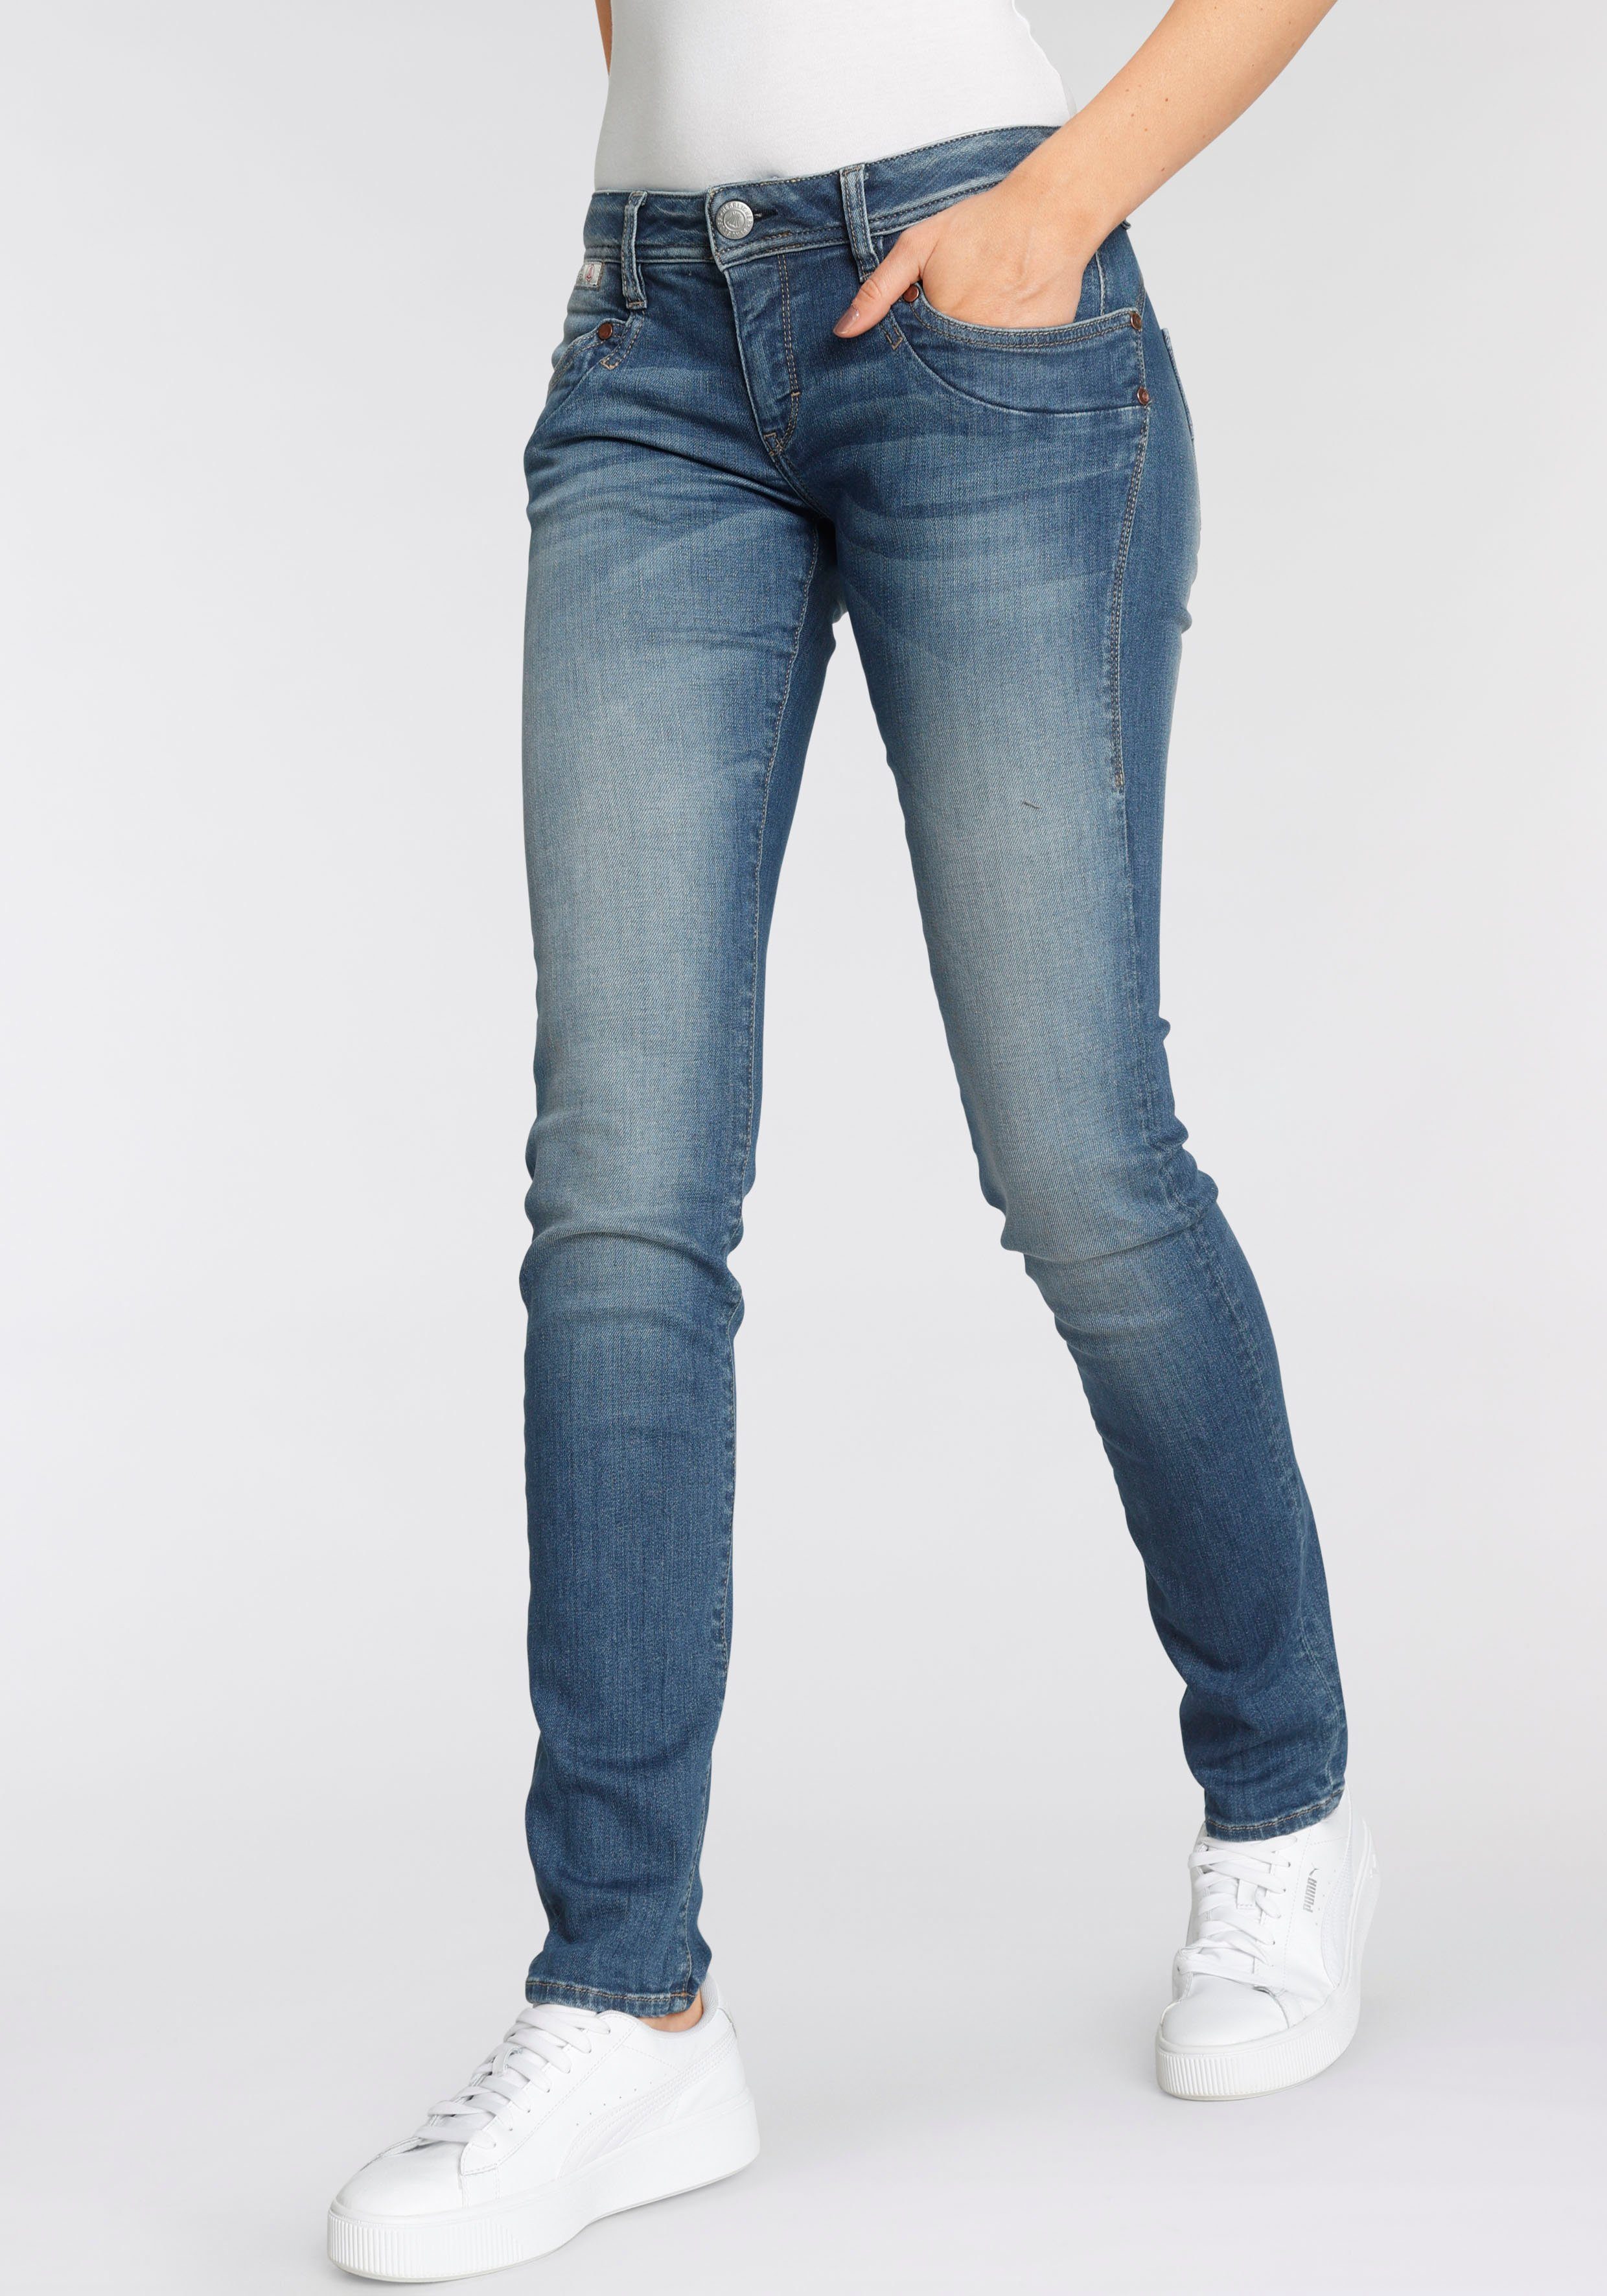 Herrlicher Slim-fit-Jeans PIPER SLIM umweltfreundlich dank Kitotex Technology ORGANIC